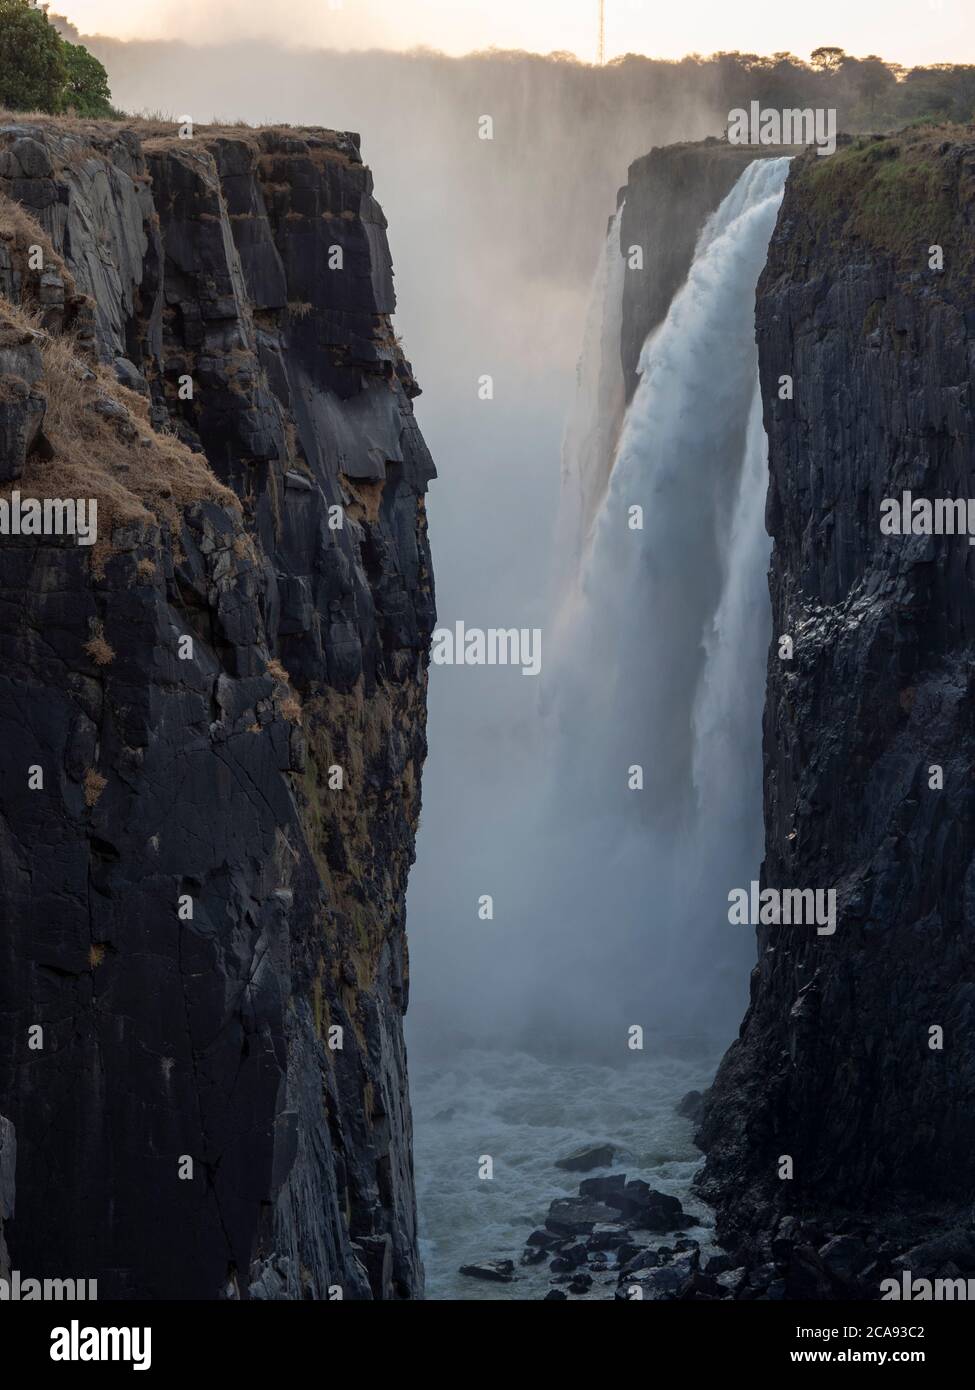 Blick auf die Victoria Falls am Zambezi River, UNESCO-Weltkulturerbe, die Grenze zwischen Sambia und Simbabwe, Afrika Stockfoto